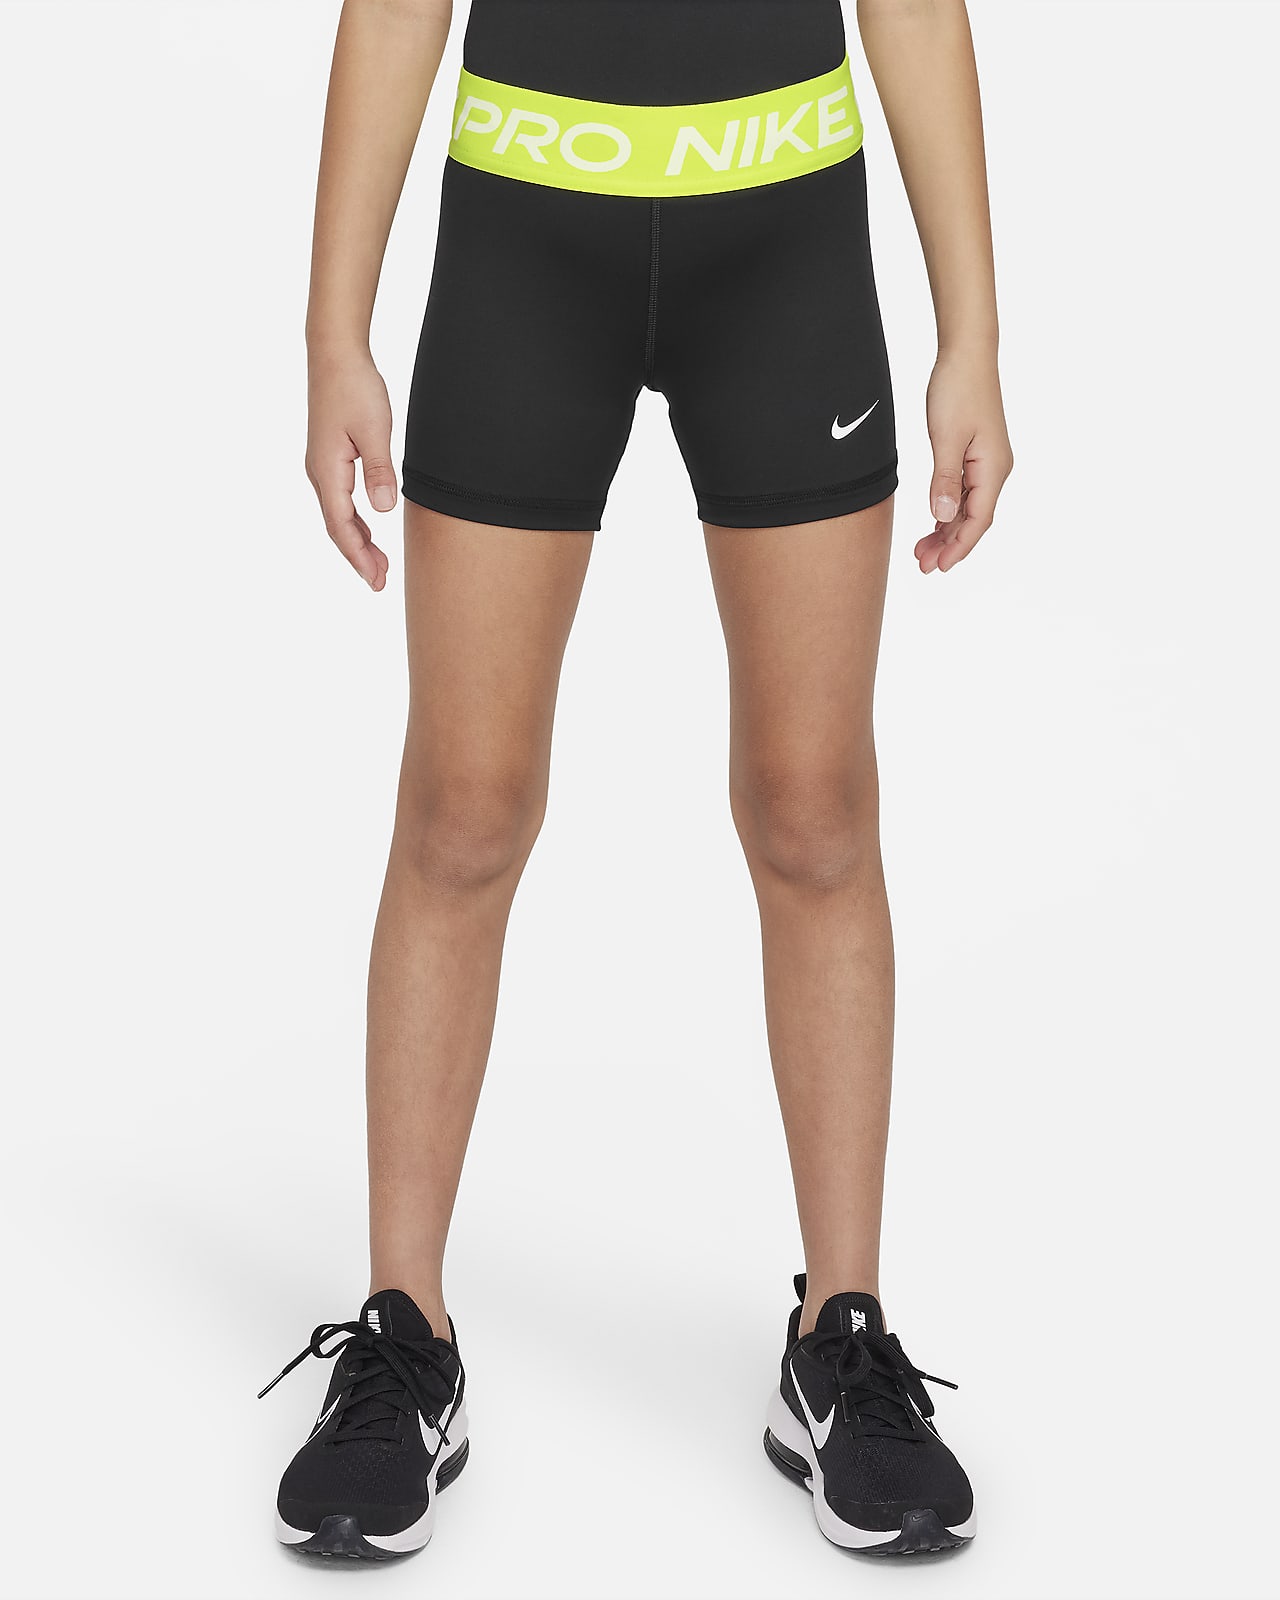 Nike Pro Pantalons curts - Nena